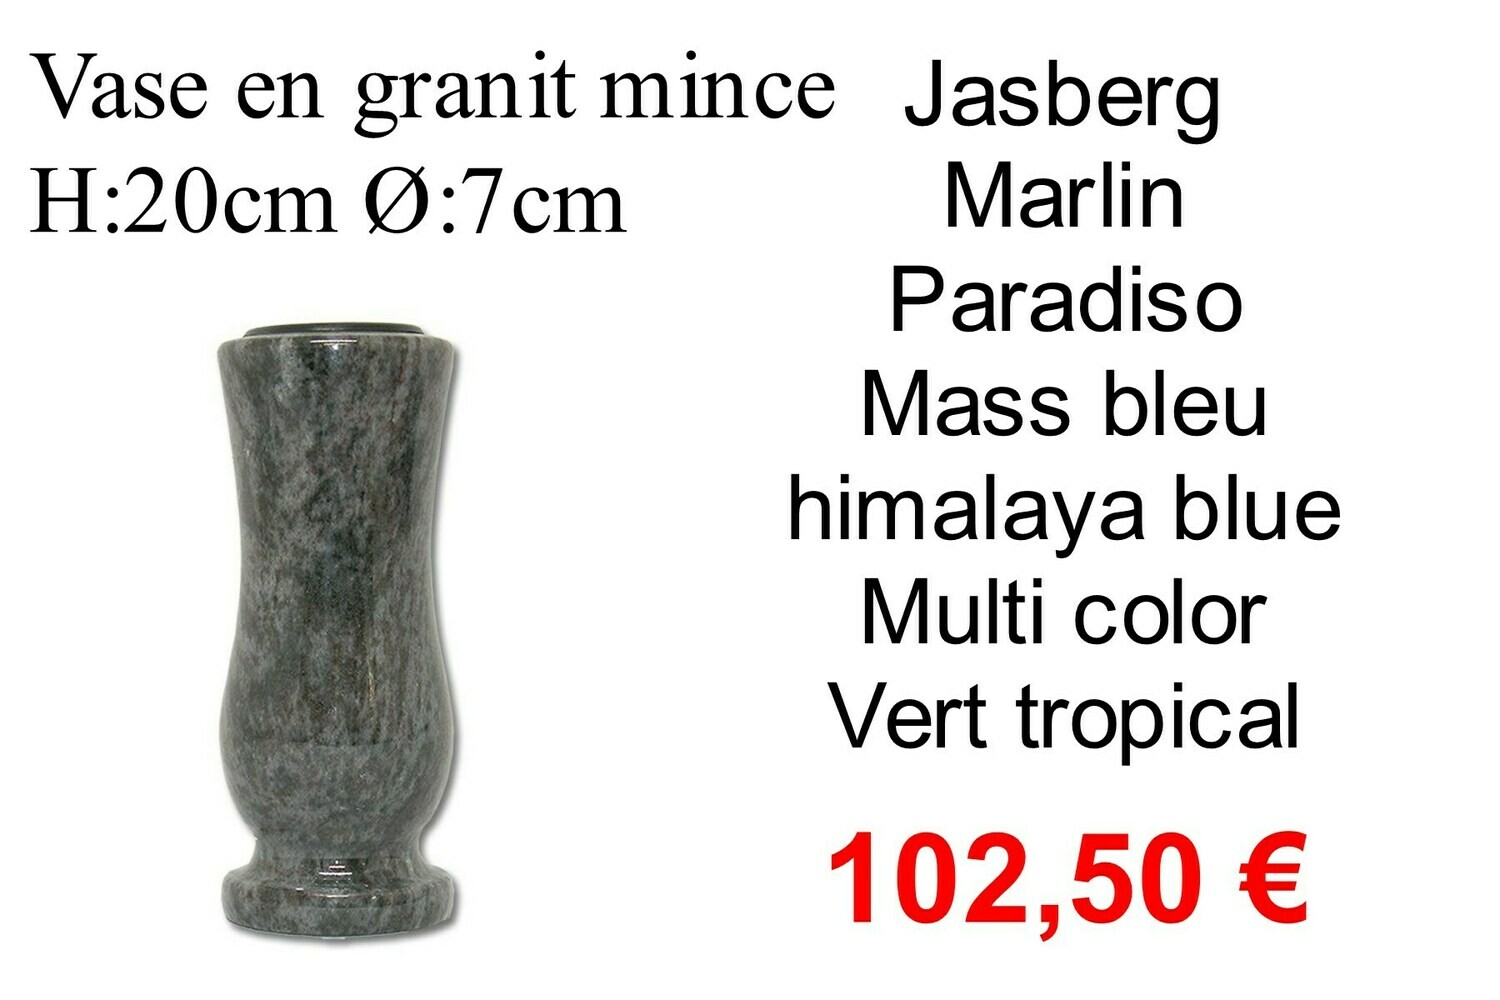 Vase en granit mince hors frais d'emballages et livraison 12,50 € par commande